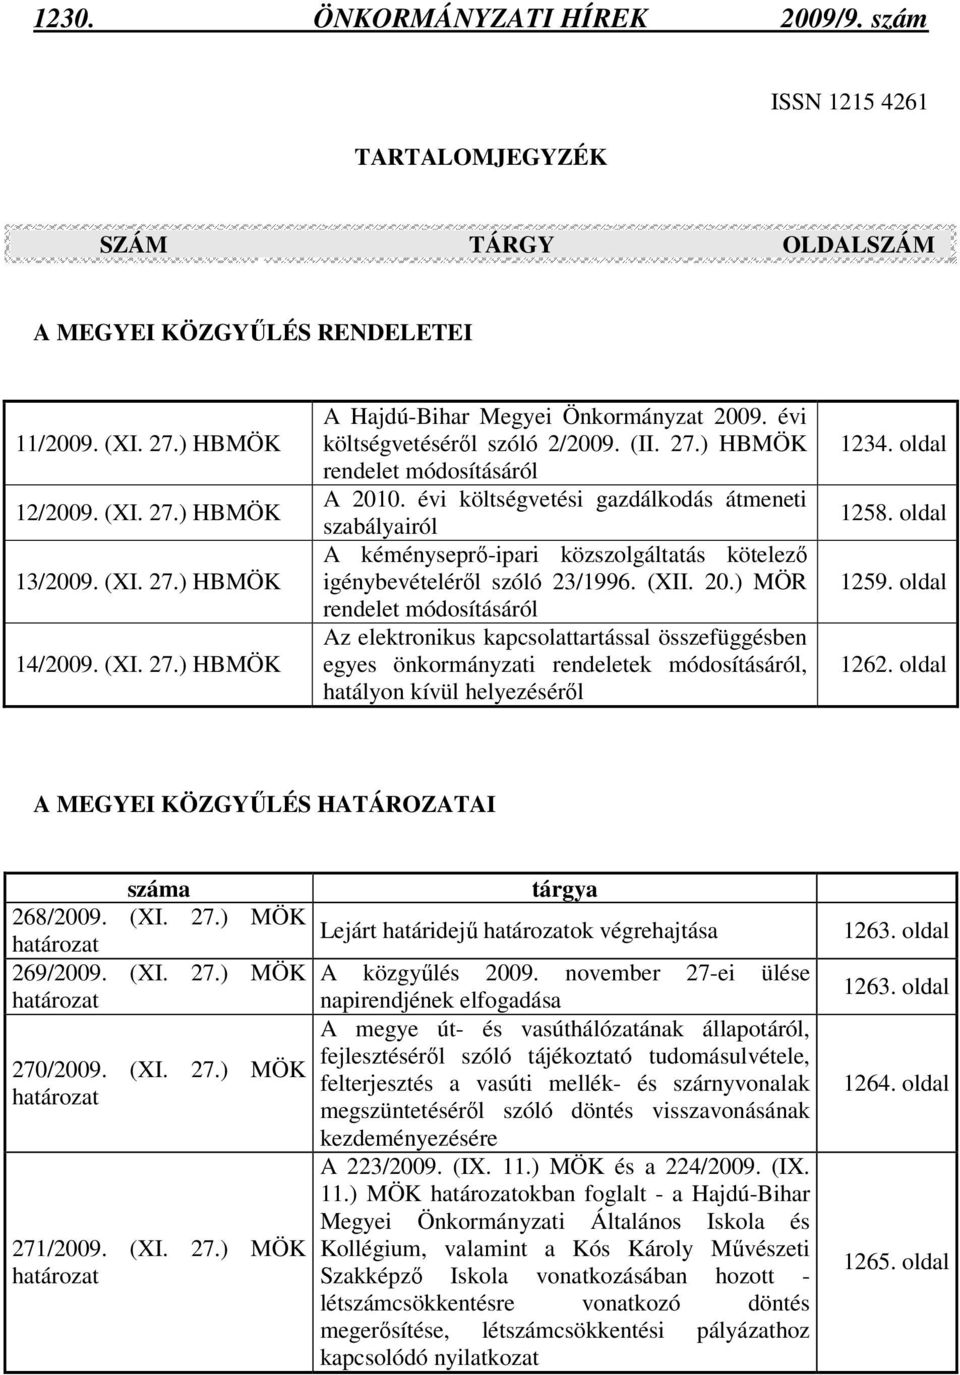 évi költségvetési gazdálkodás átmeneti szabályairól A kéményseprı-ipari közszolgáltatás kötelezı igénybevételérıl szóló 23/1996. (XII. 20.